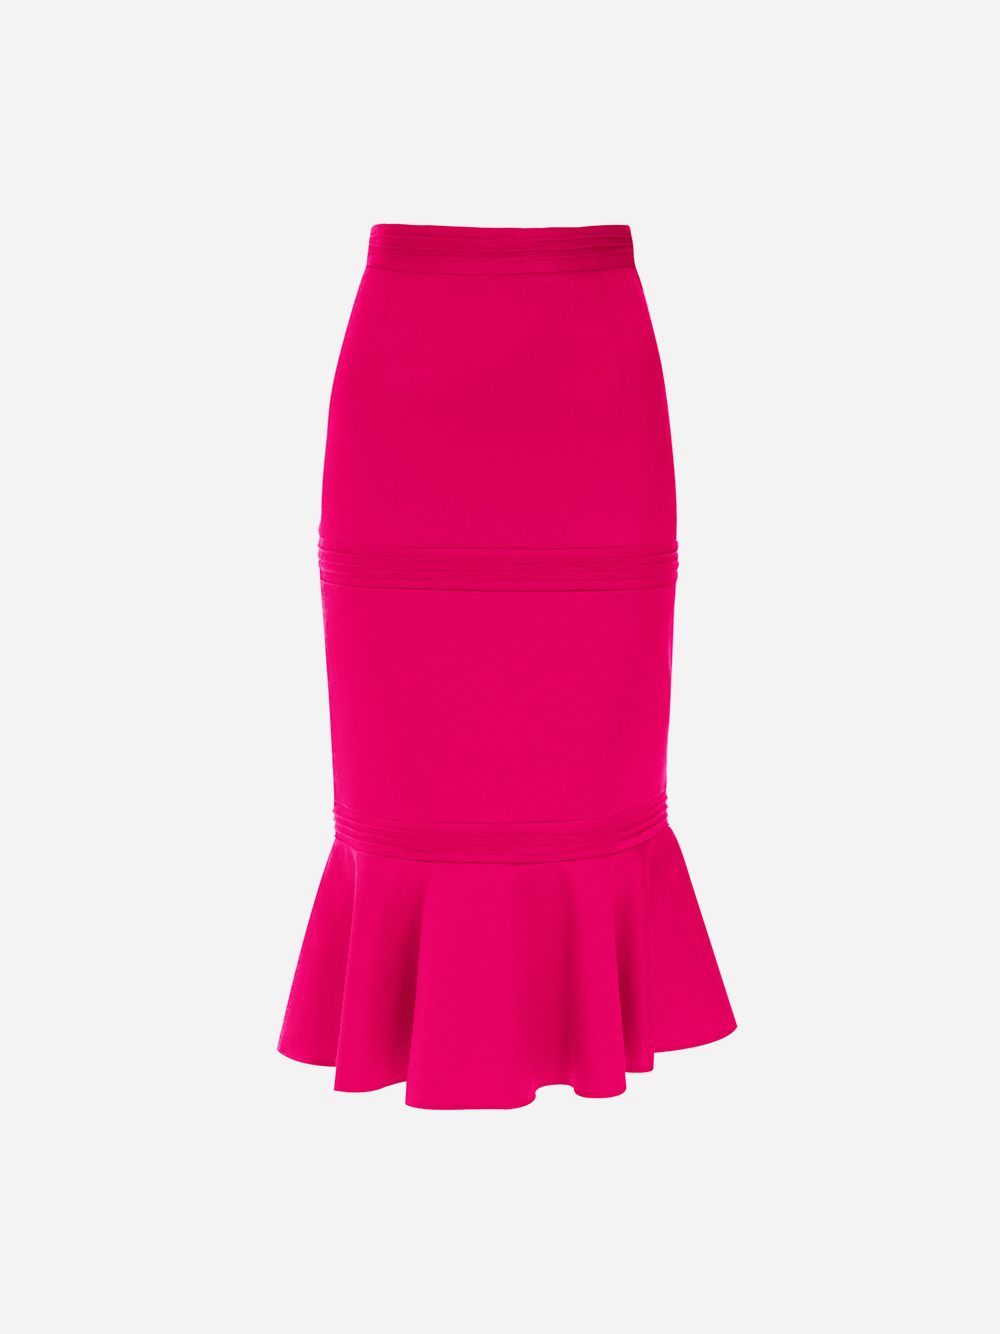 Pink Skirt Chiva | Imauve